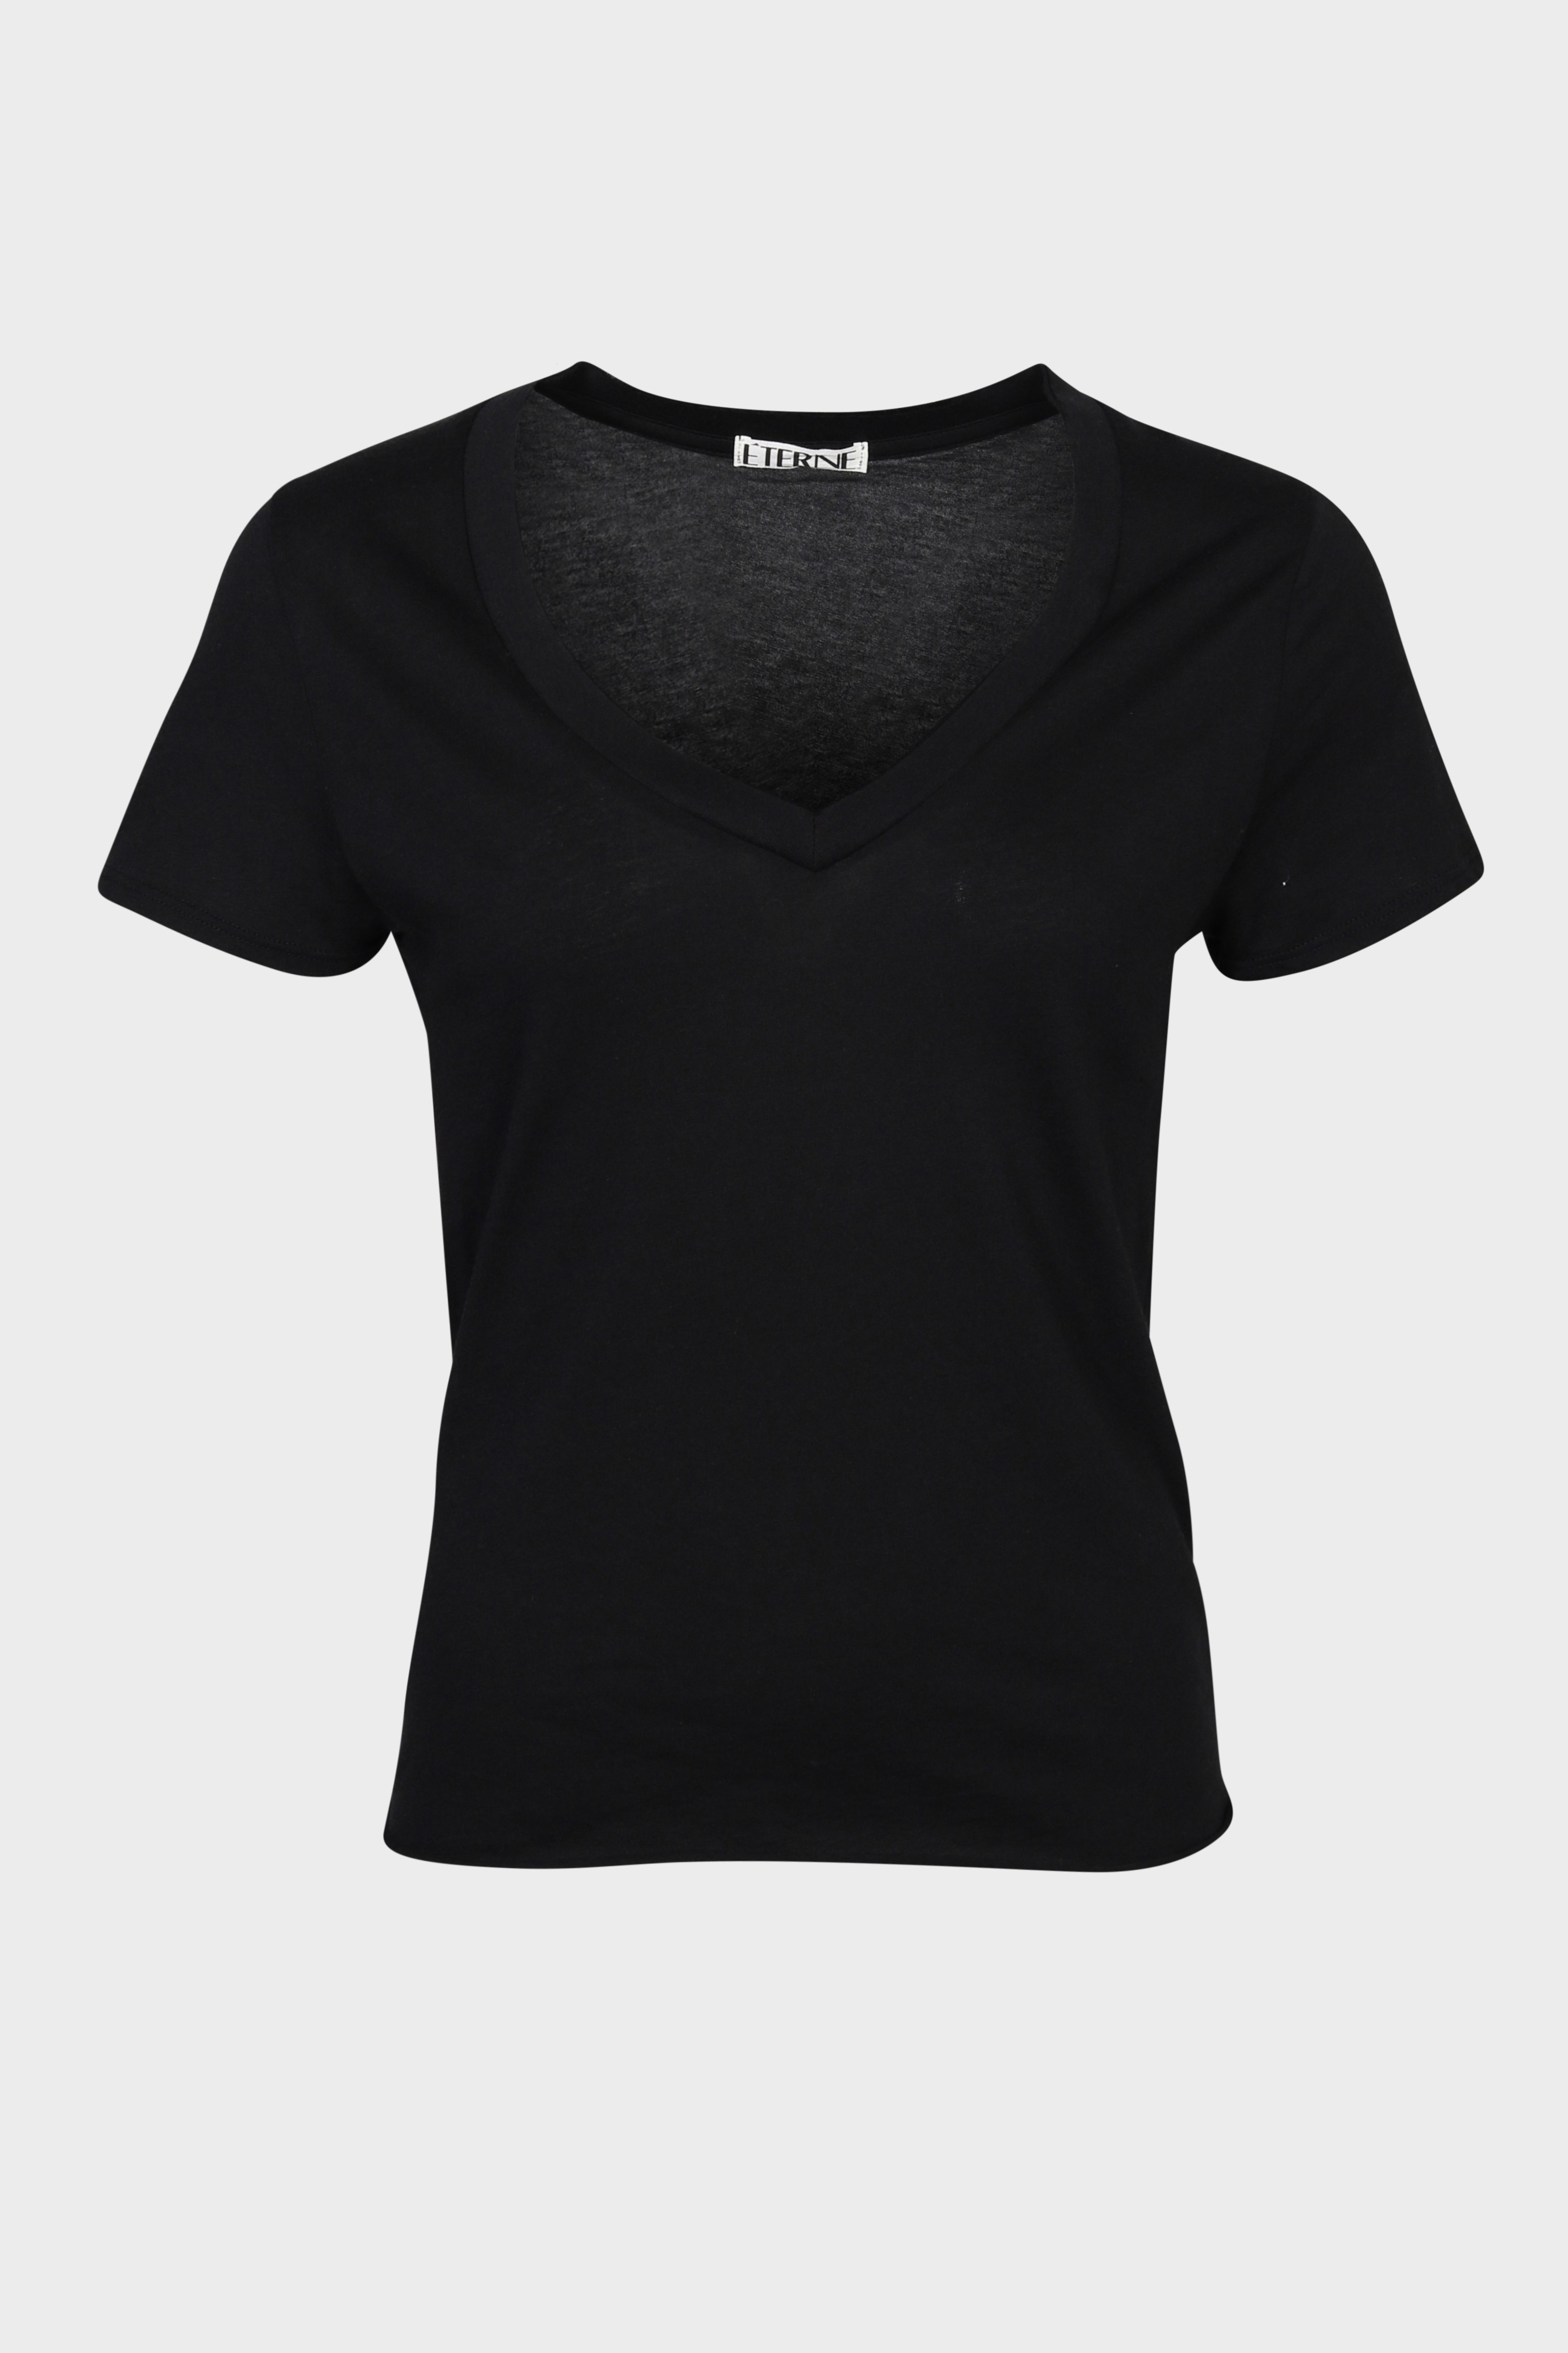 ÉTERNE V-Neck T-Shirt in Black S